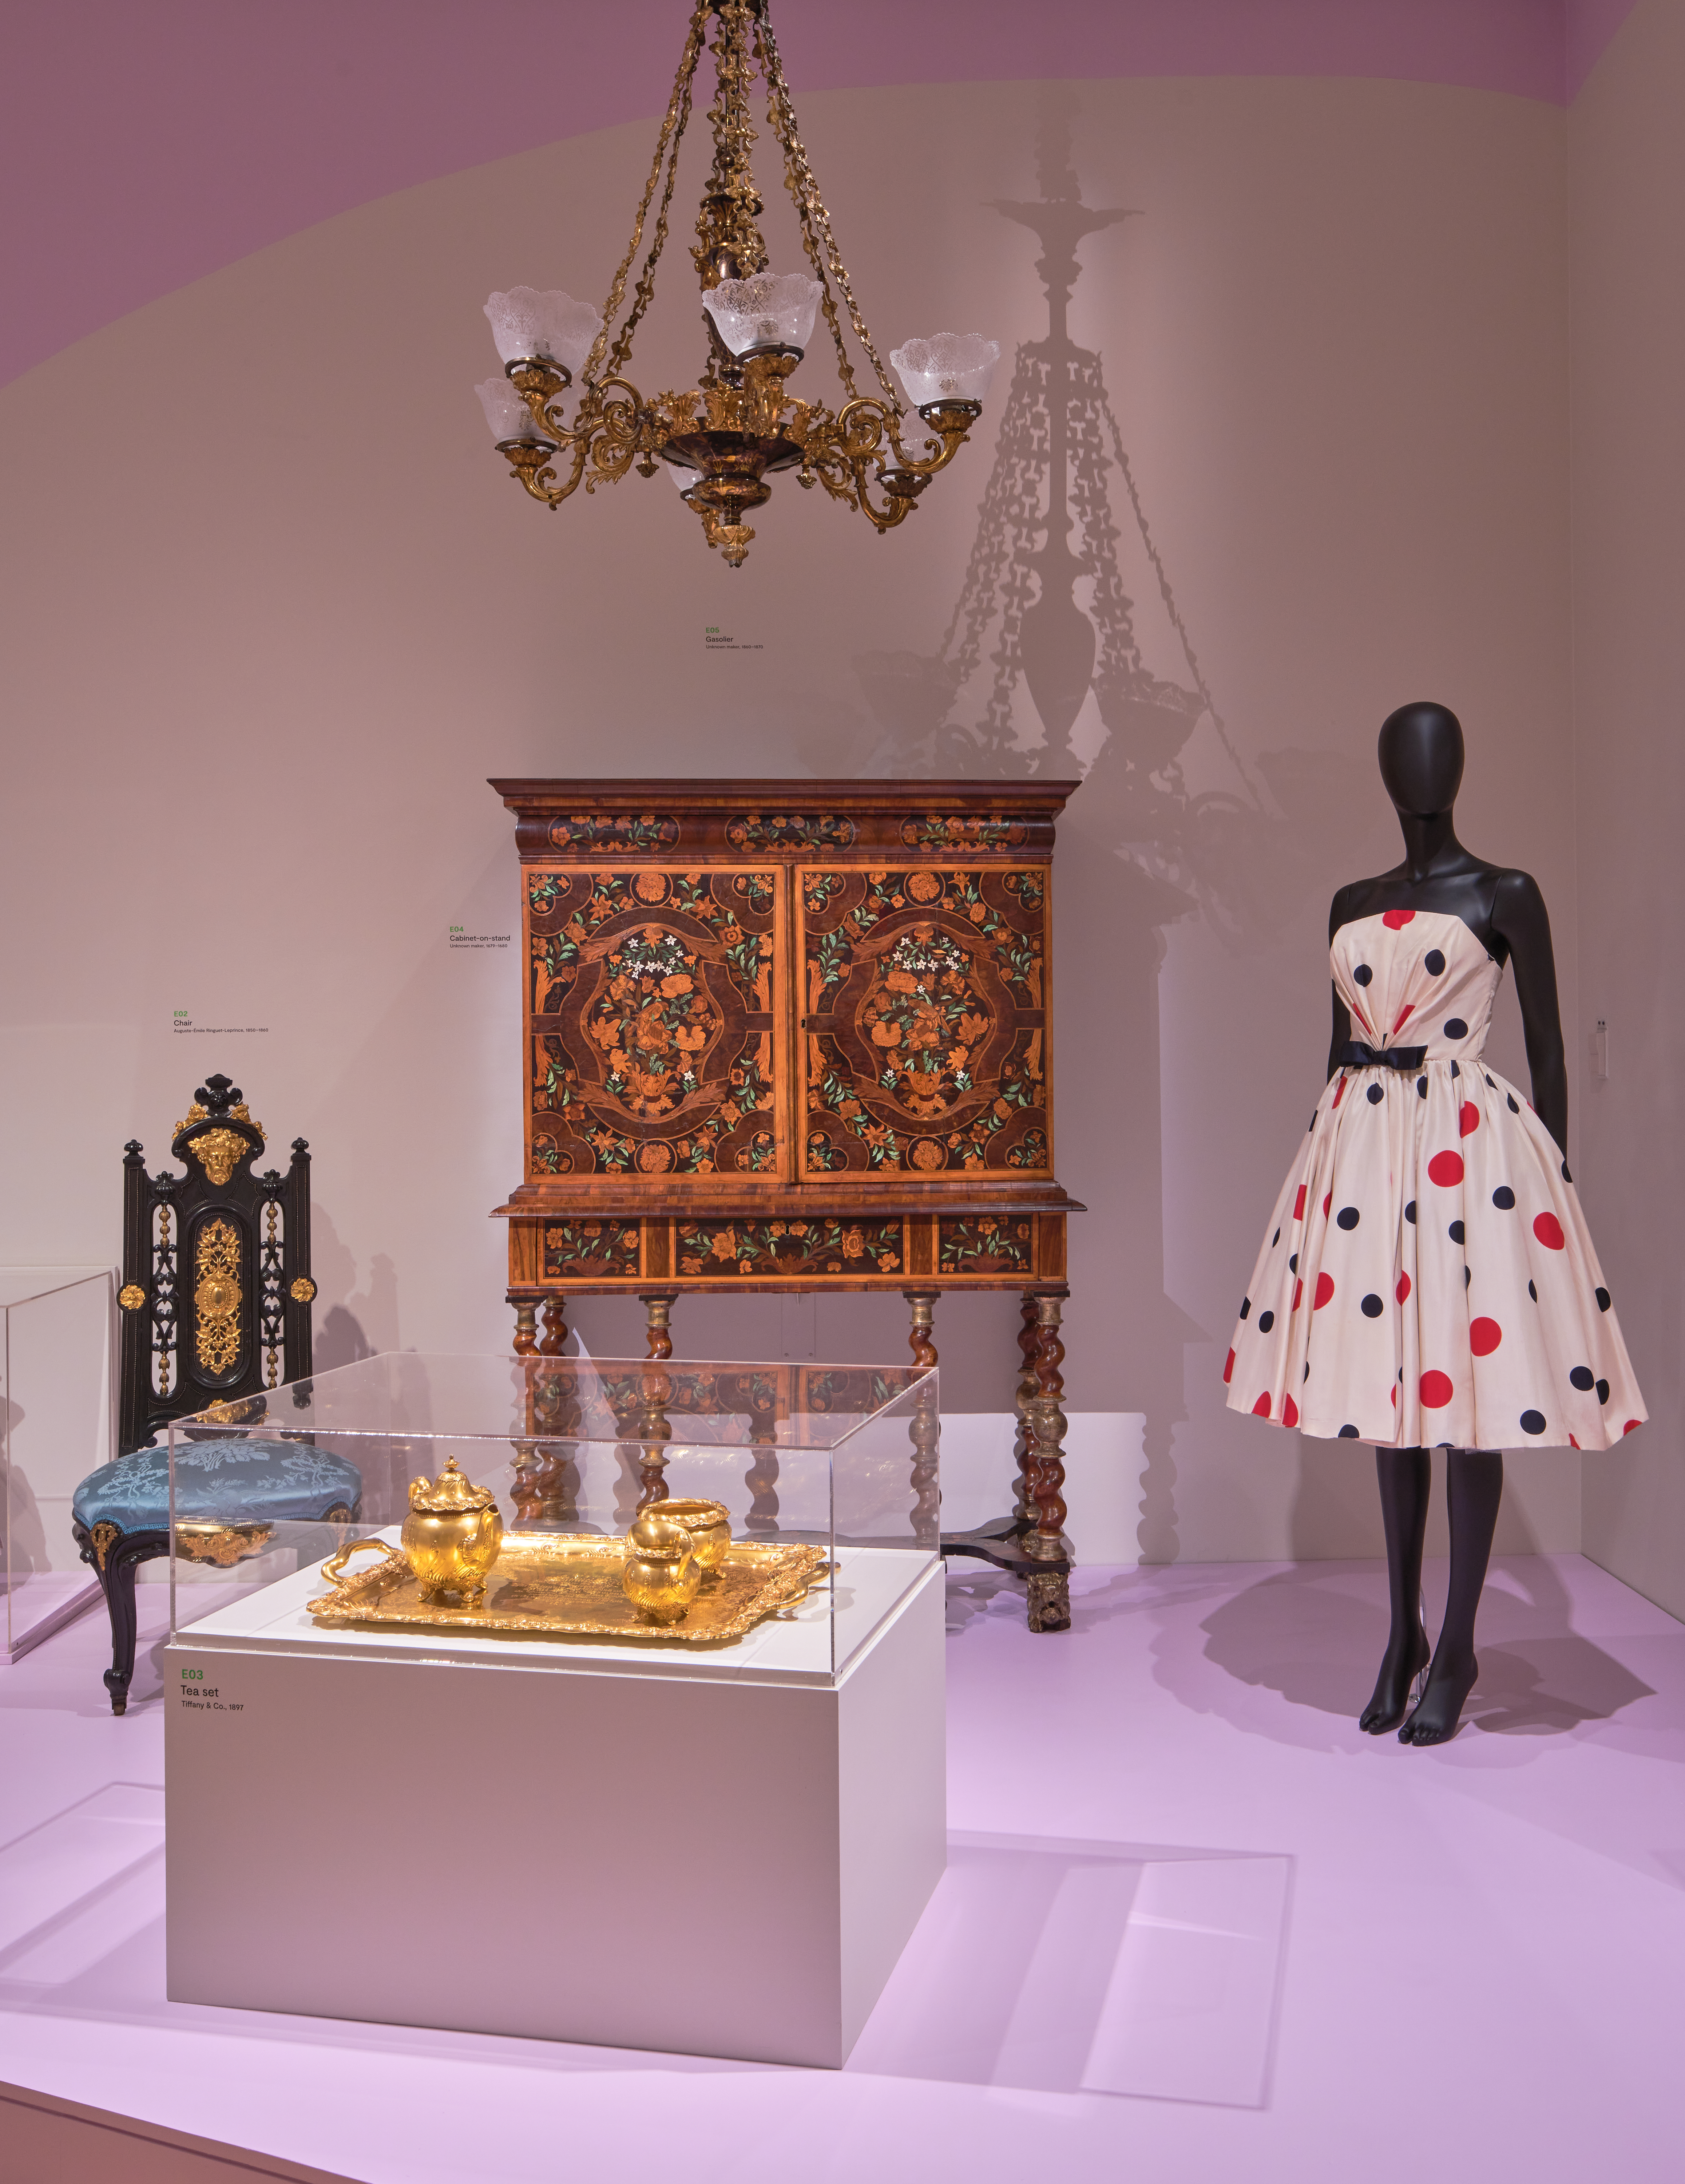 Um manequim e móveis ornamentados são exibidos em uma galeria.